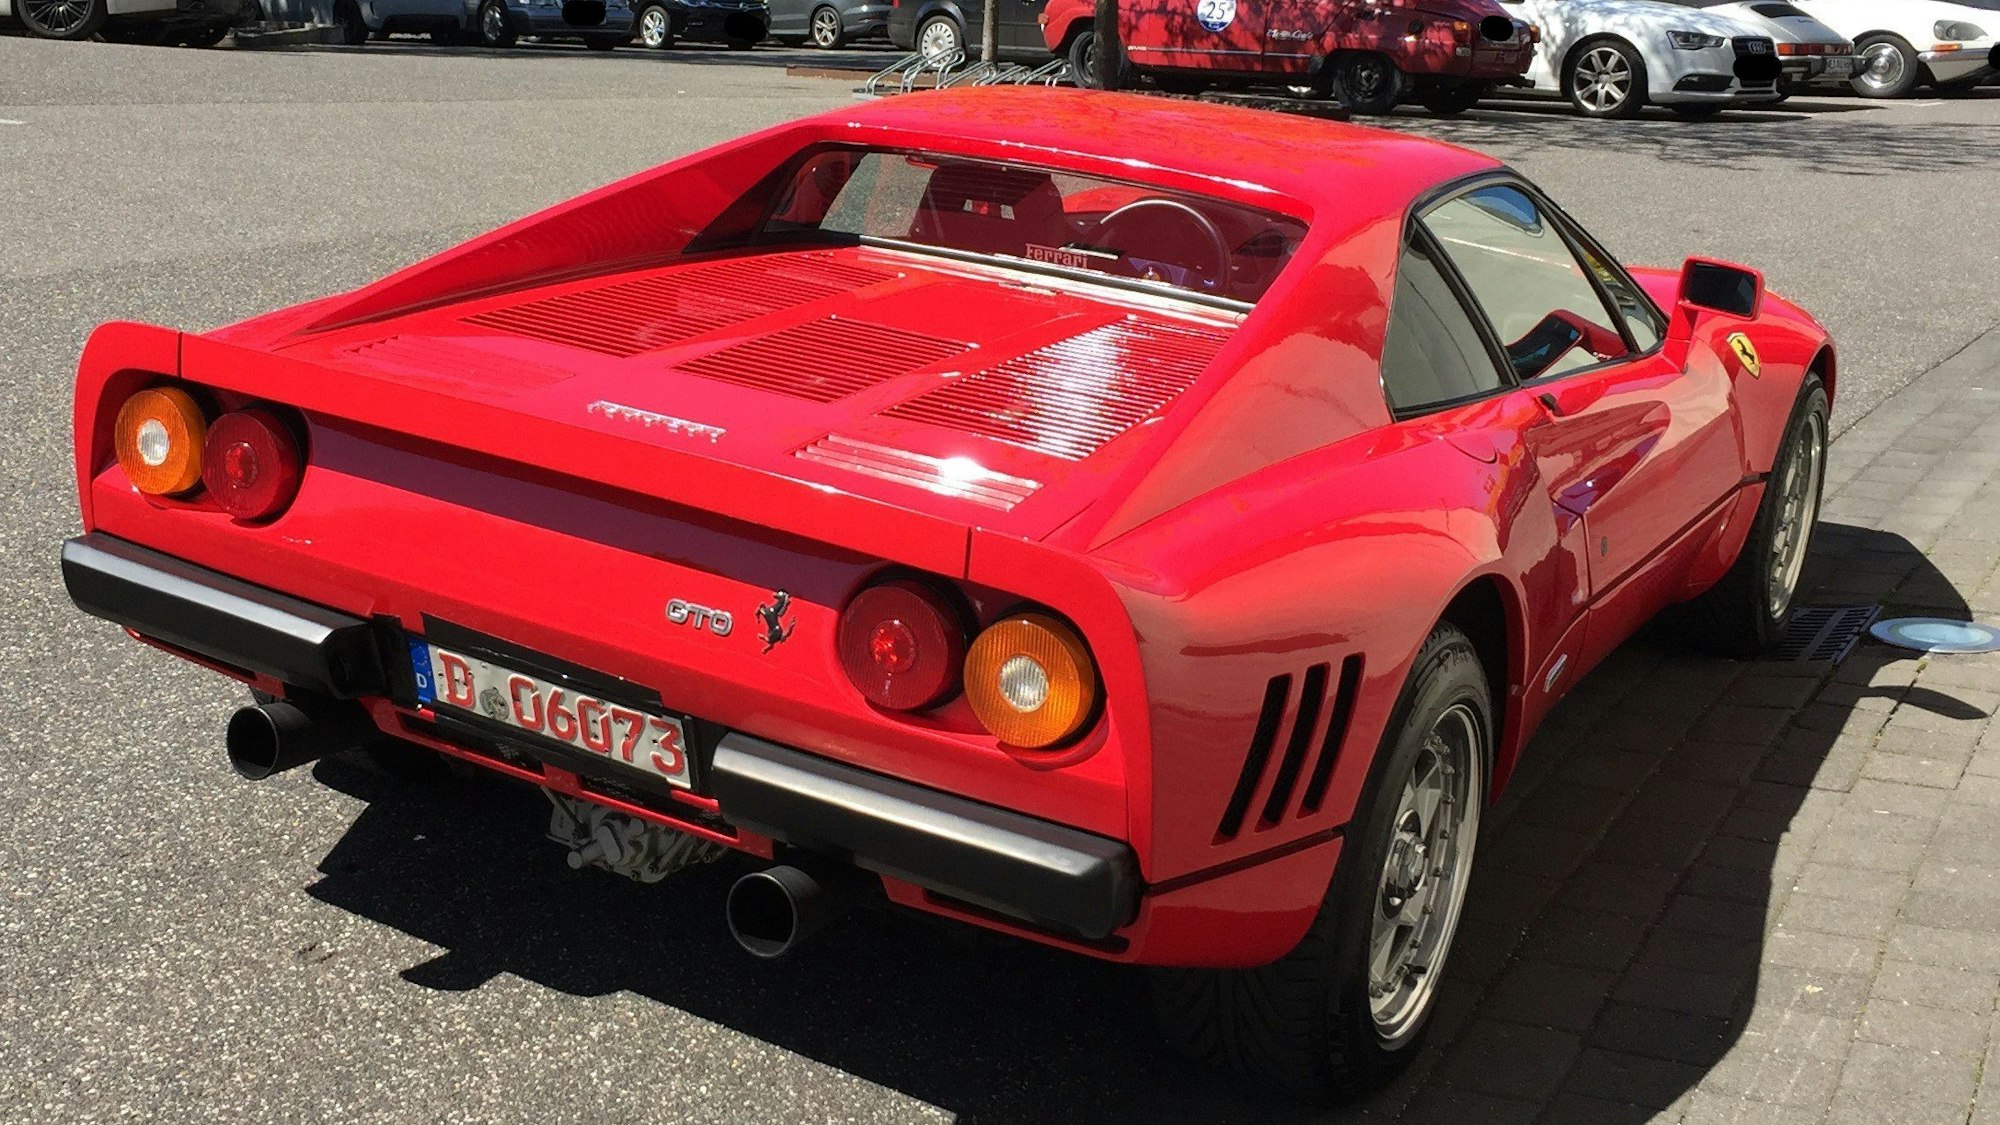 Dieses am 13. Mai 2019 von der Polizei Düsseldorf zur Verfügung gestellte Foto zeigt einen Ferrari. Ein Dieb nutzte die Gelegenheit einer Probefahrt und entwendete am 13.05.2019 in Neuss-Uedesheim den seltenen Ferrari GTO.